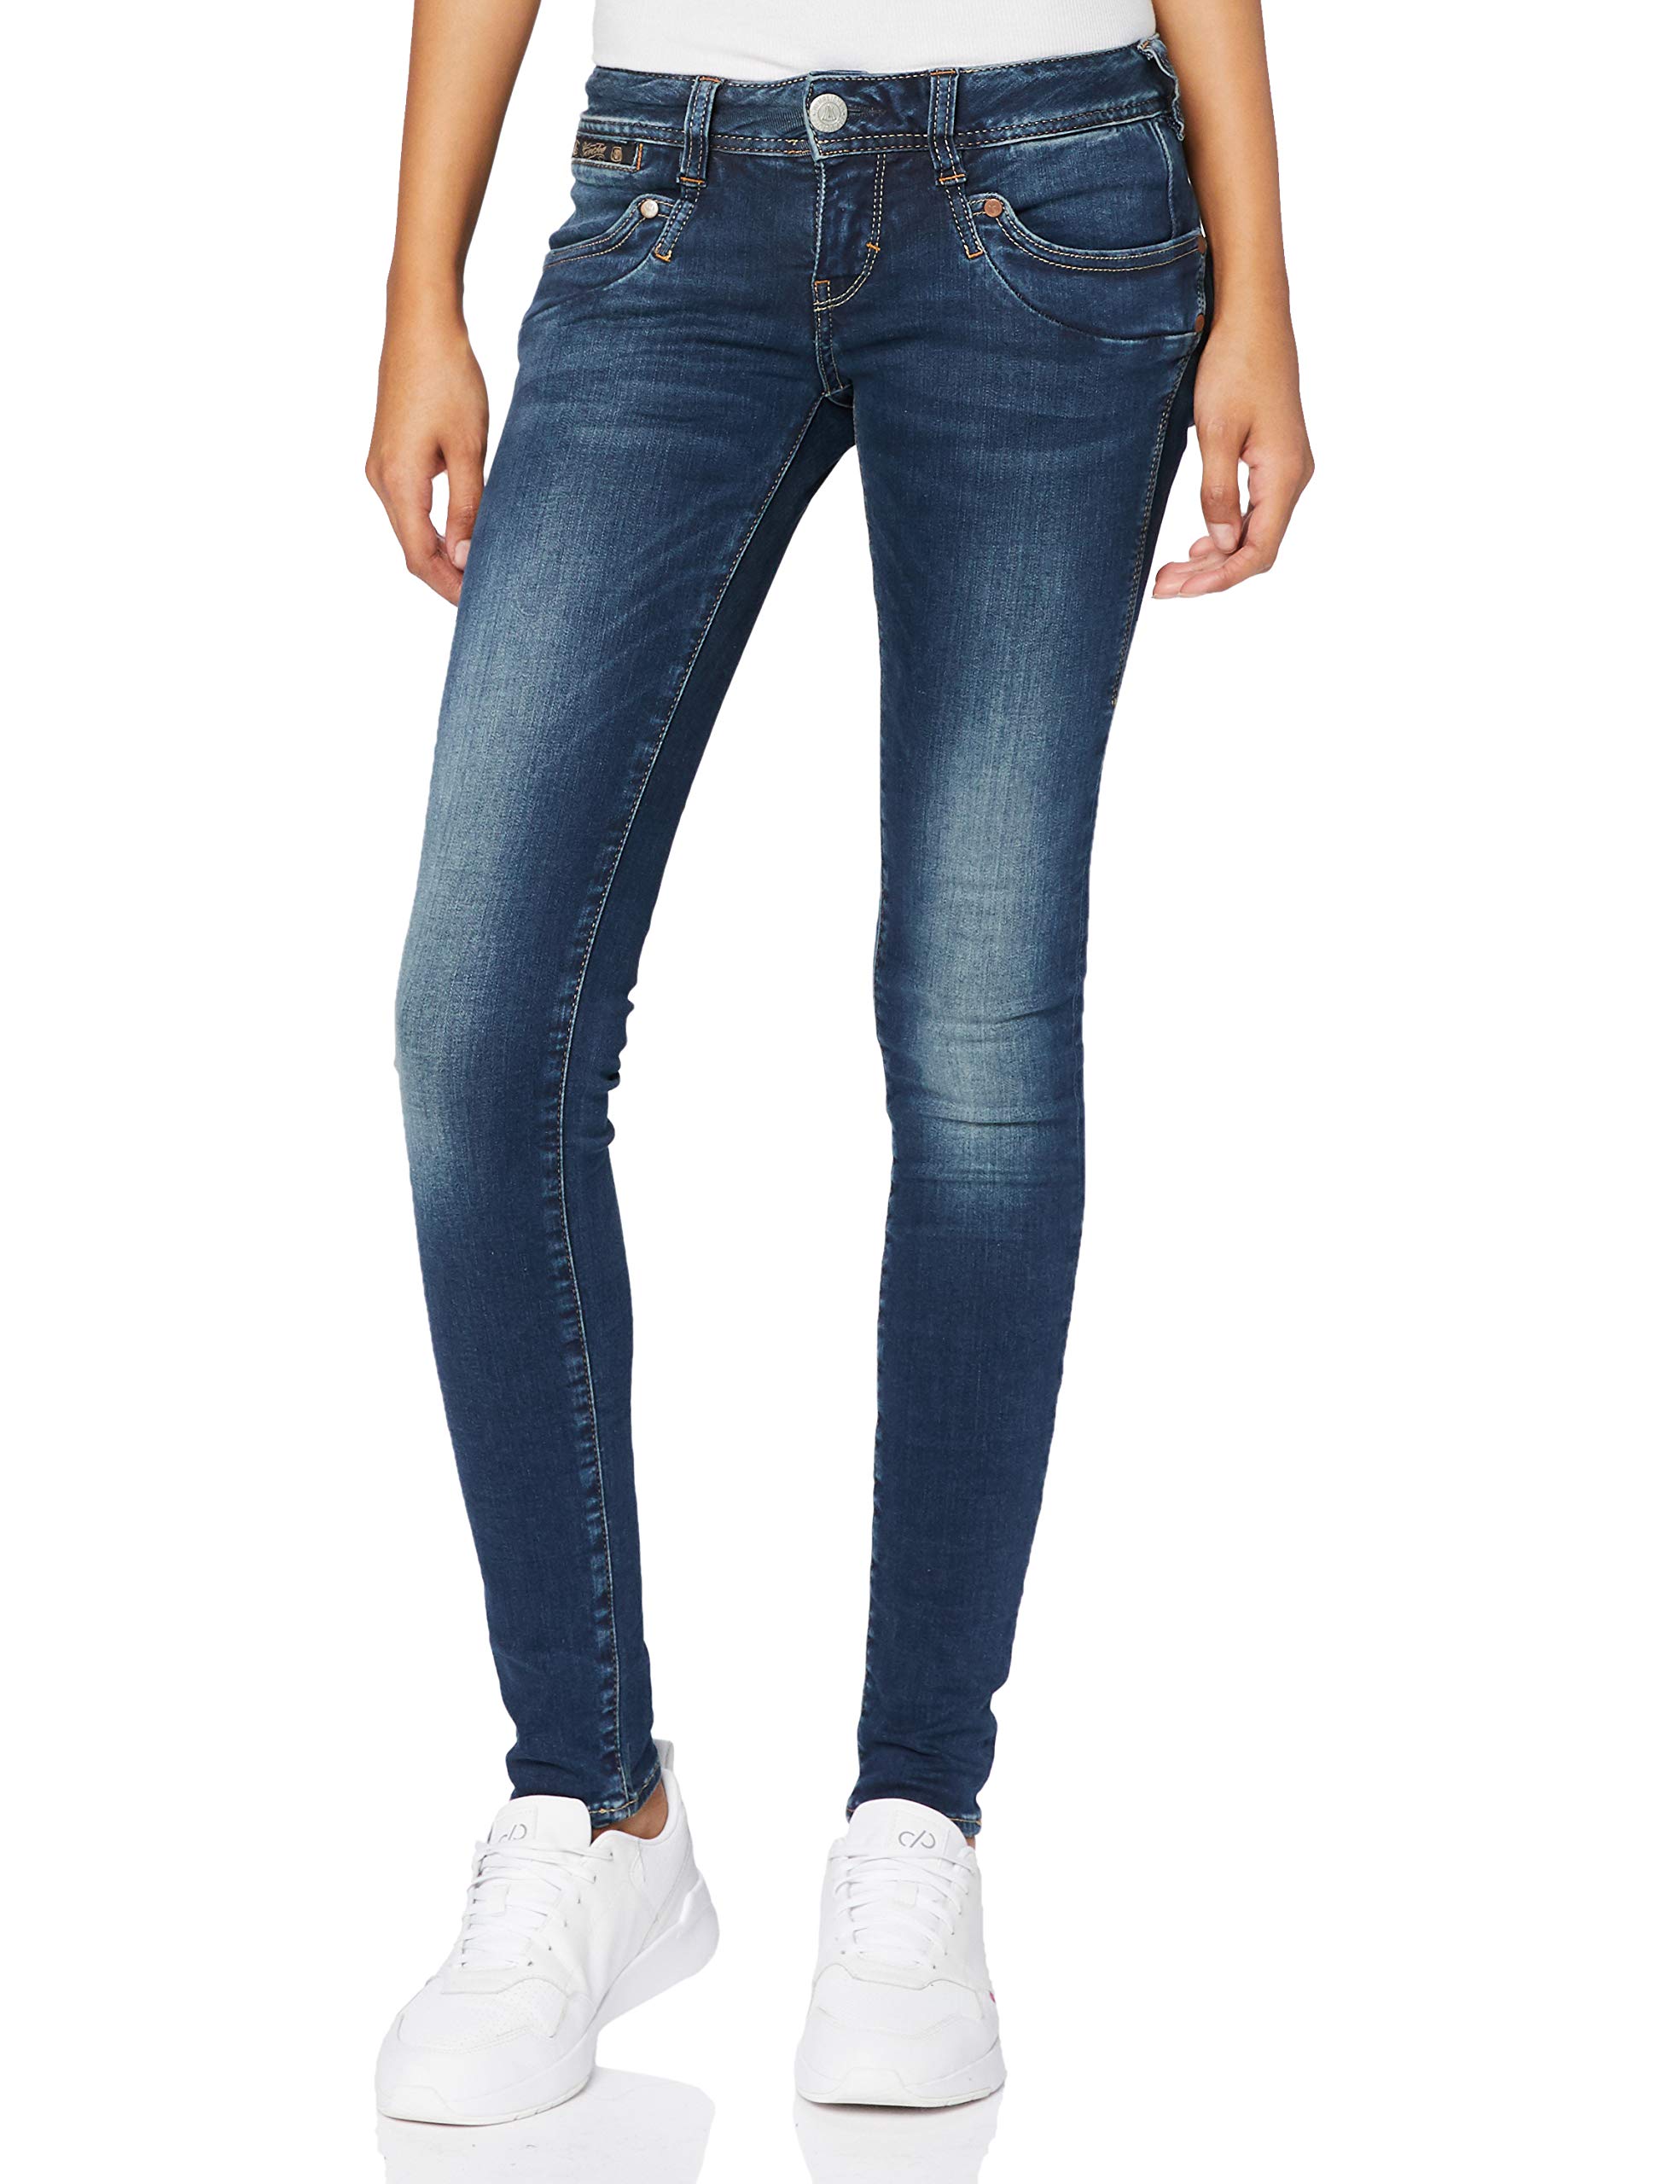 Herrlicher Damen Piper Slim Jeans, Blau (Clean 051), 30W / 30L